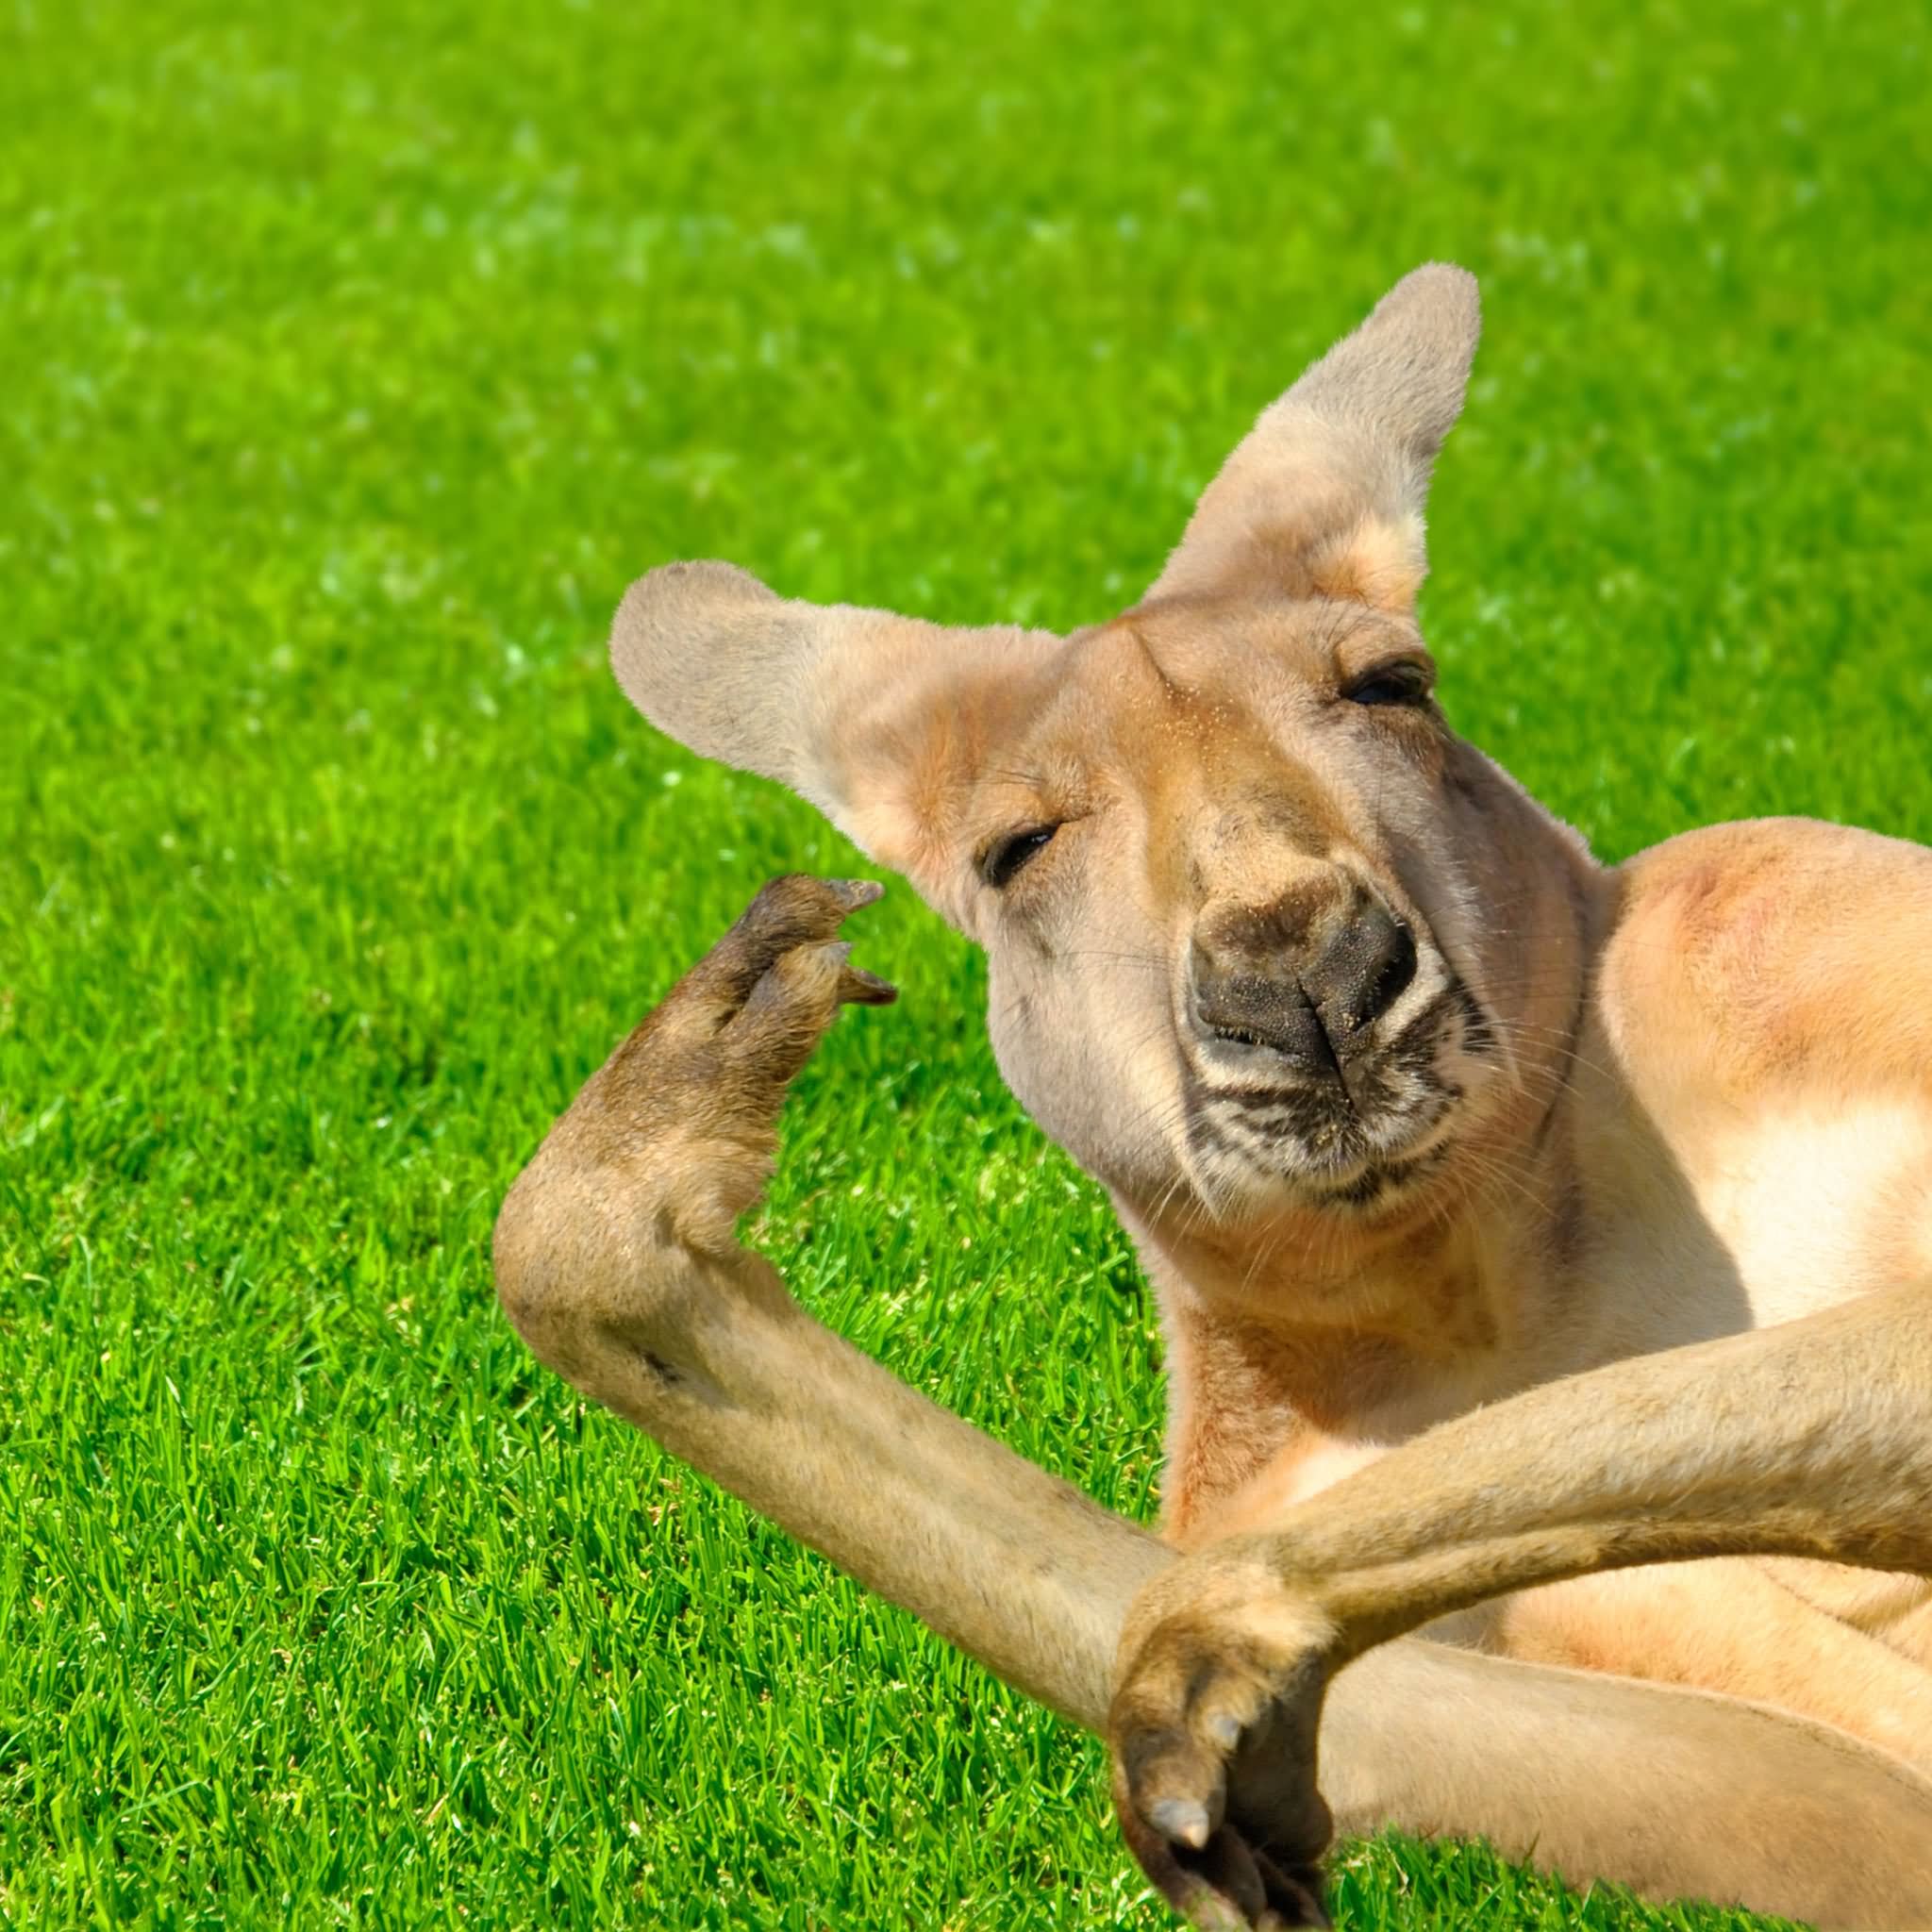 Funny Kangaroo Closeup Face Picture